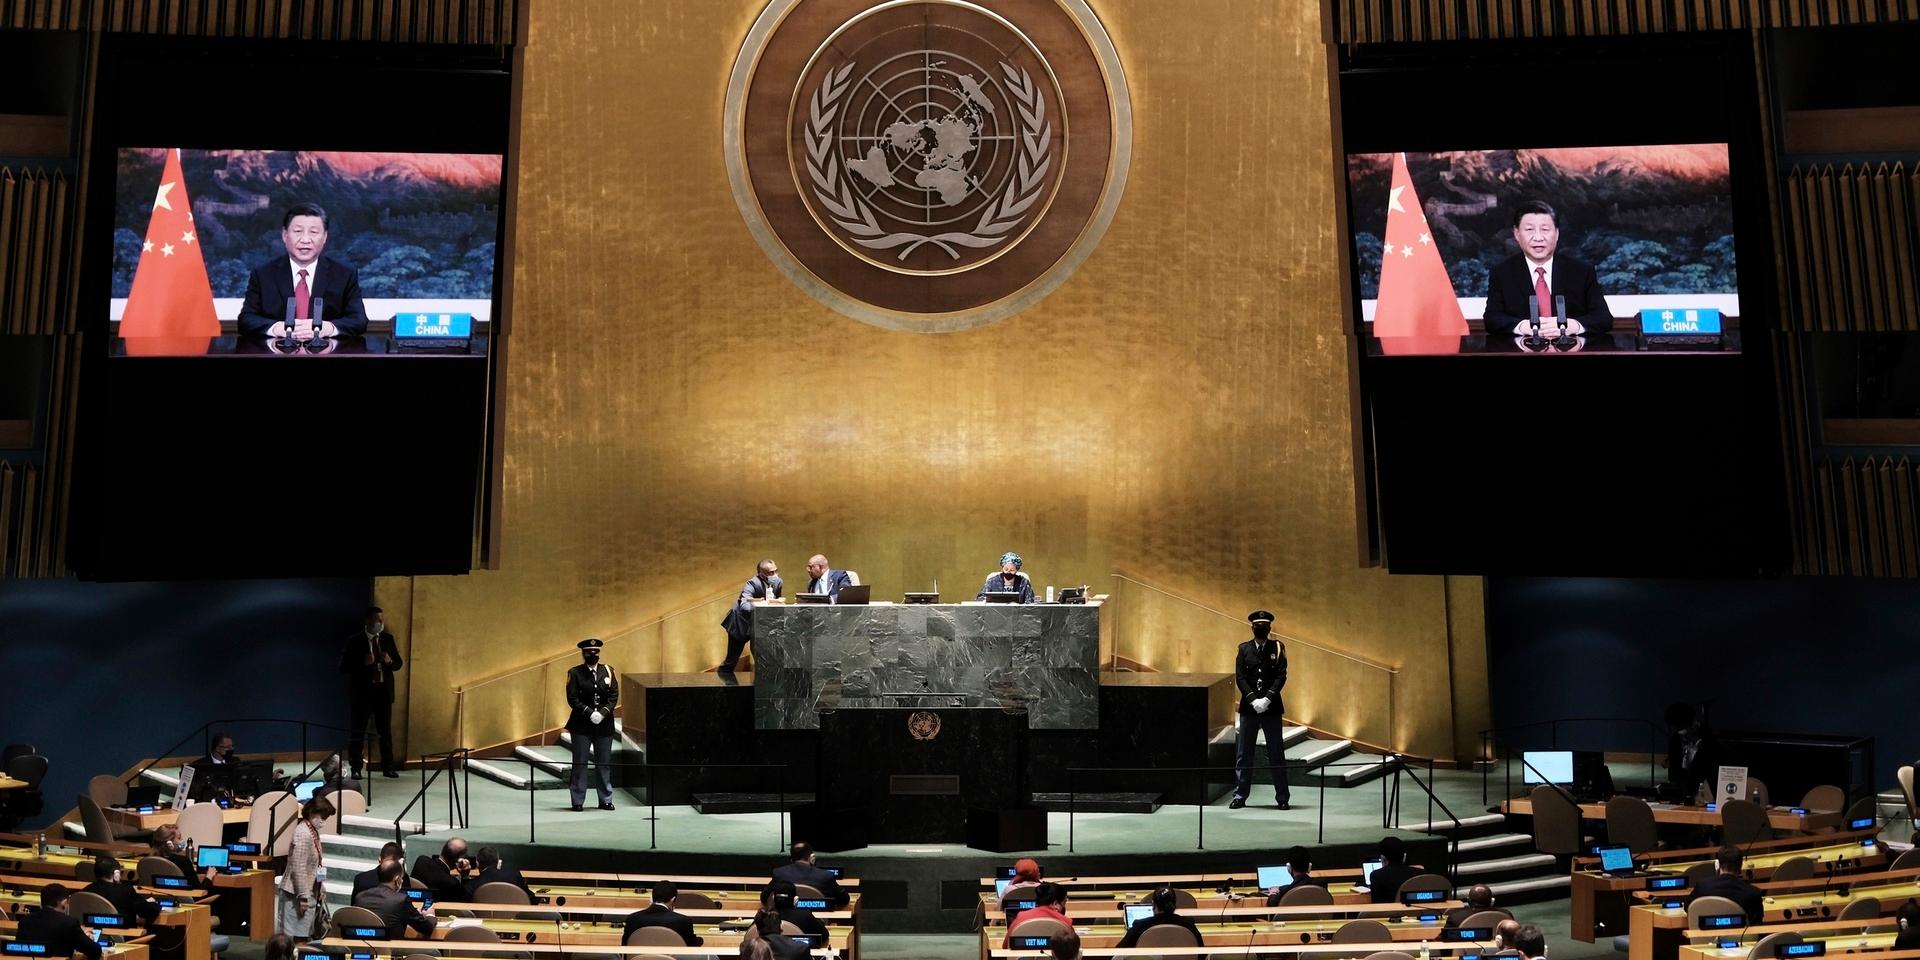 Kinas ledare Xi Jinping (på skärmarna) håller sitt förinspelade tal i FN:s generalförsamling.